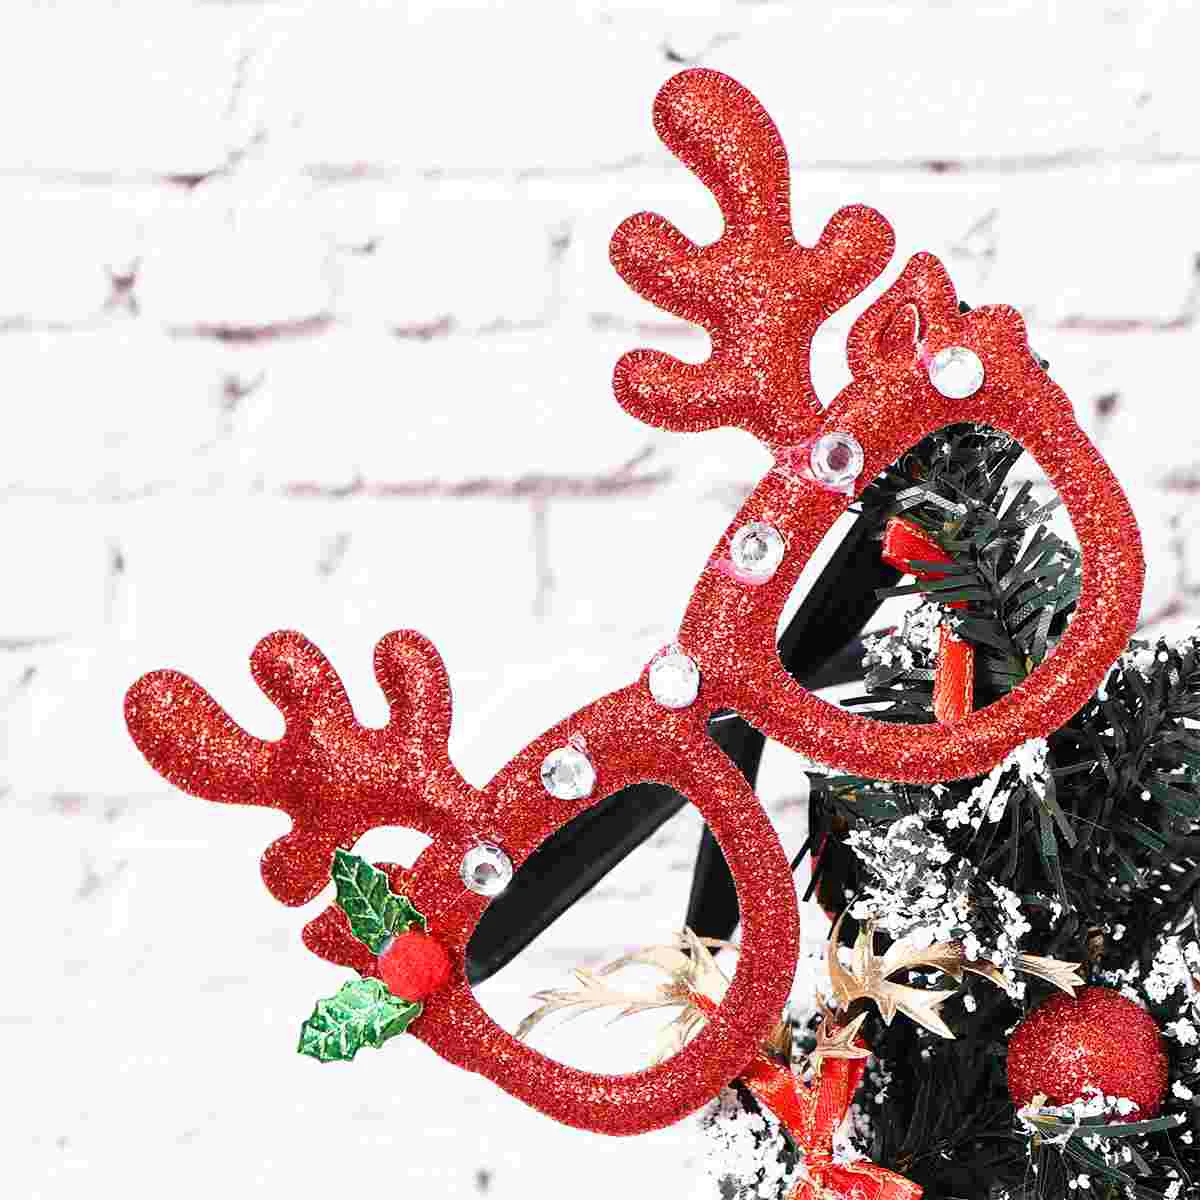 

Christmas Eyeglasses Glasses Reindeer Eyeglass Party Antlers Elk Eyewear Deer Novelty Cosplayprop Holiday Santa